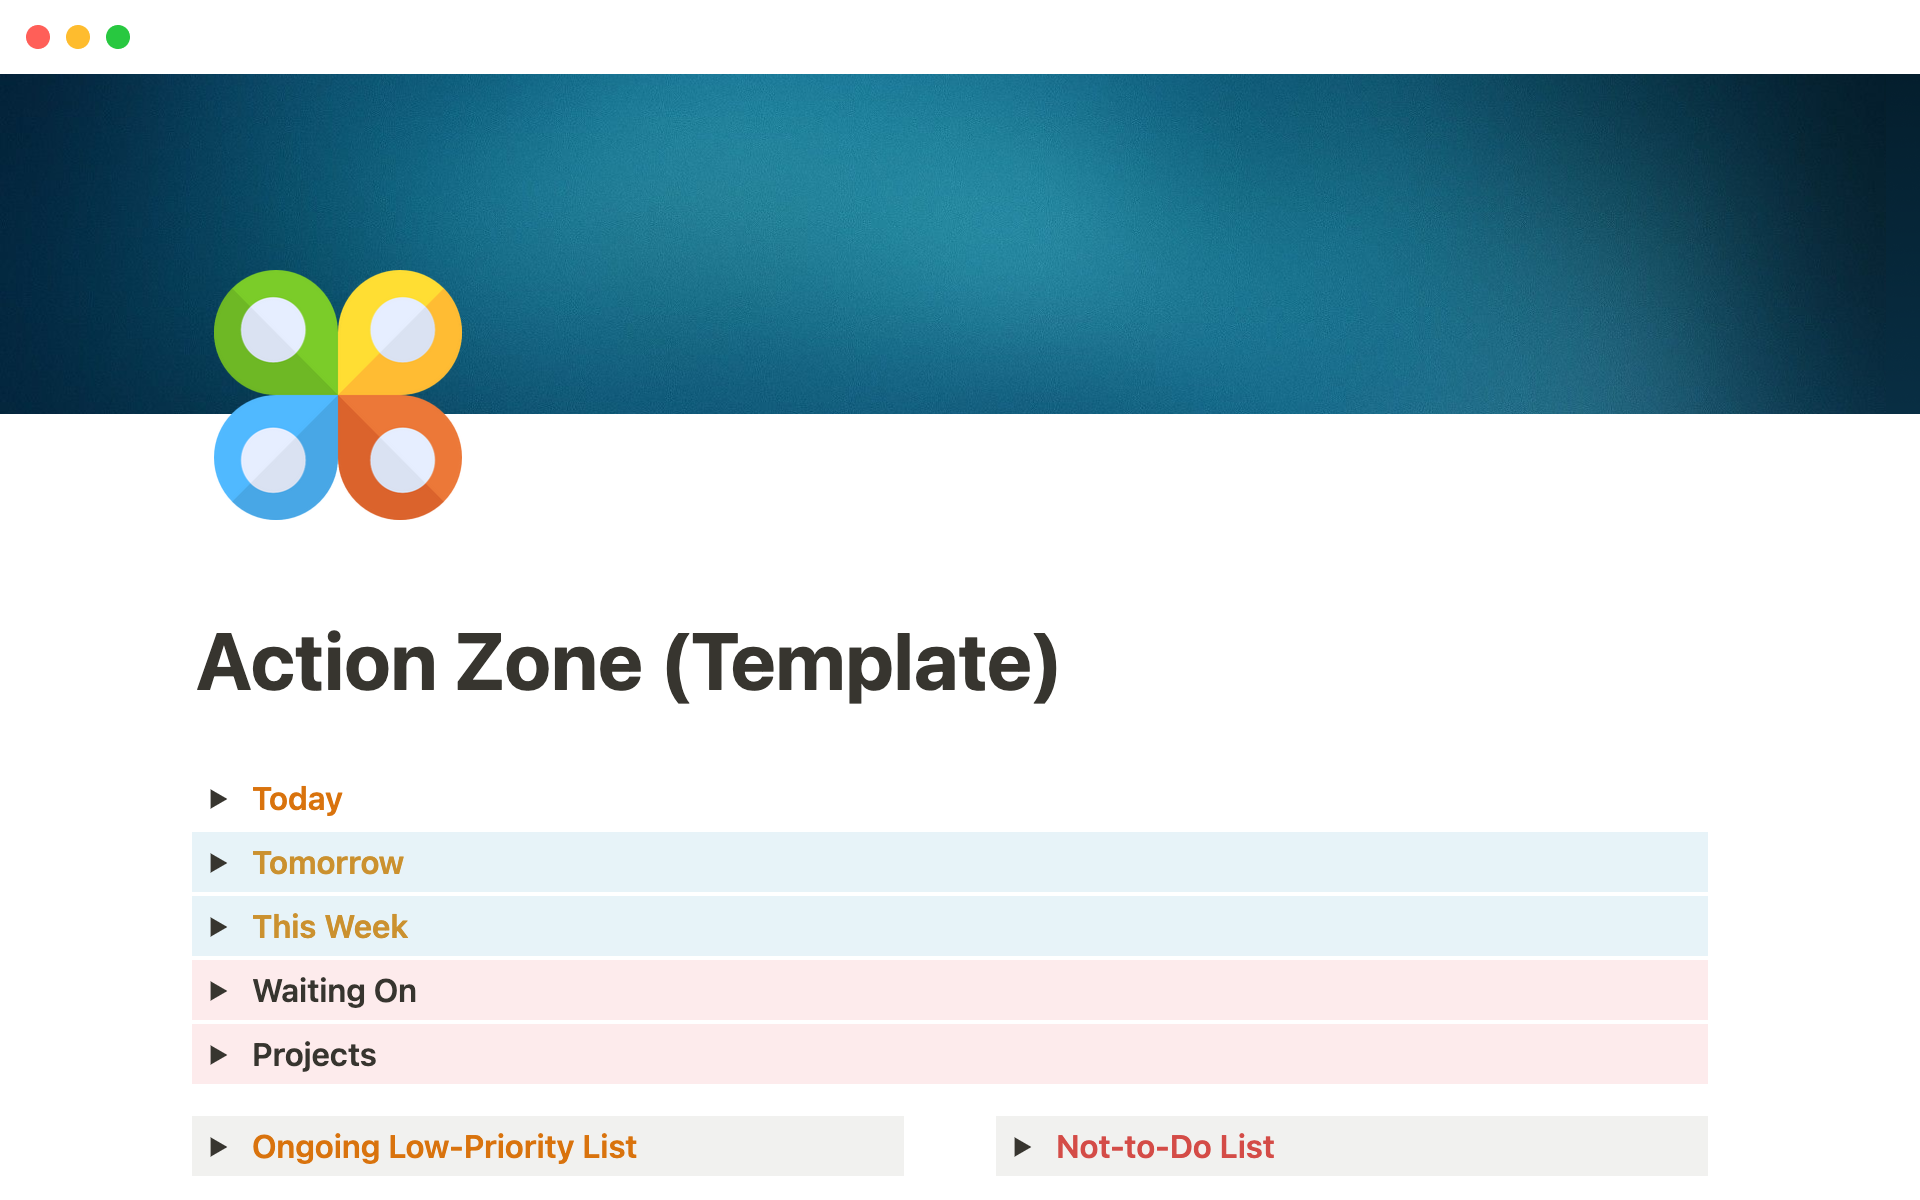 Vista previa de una plantilla para Action Zone Task/Project Manager